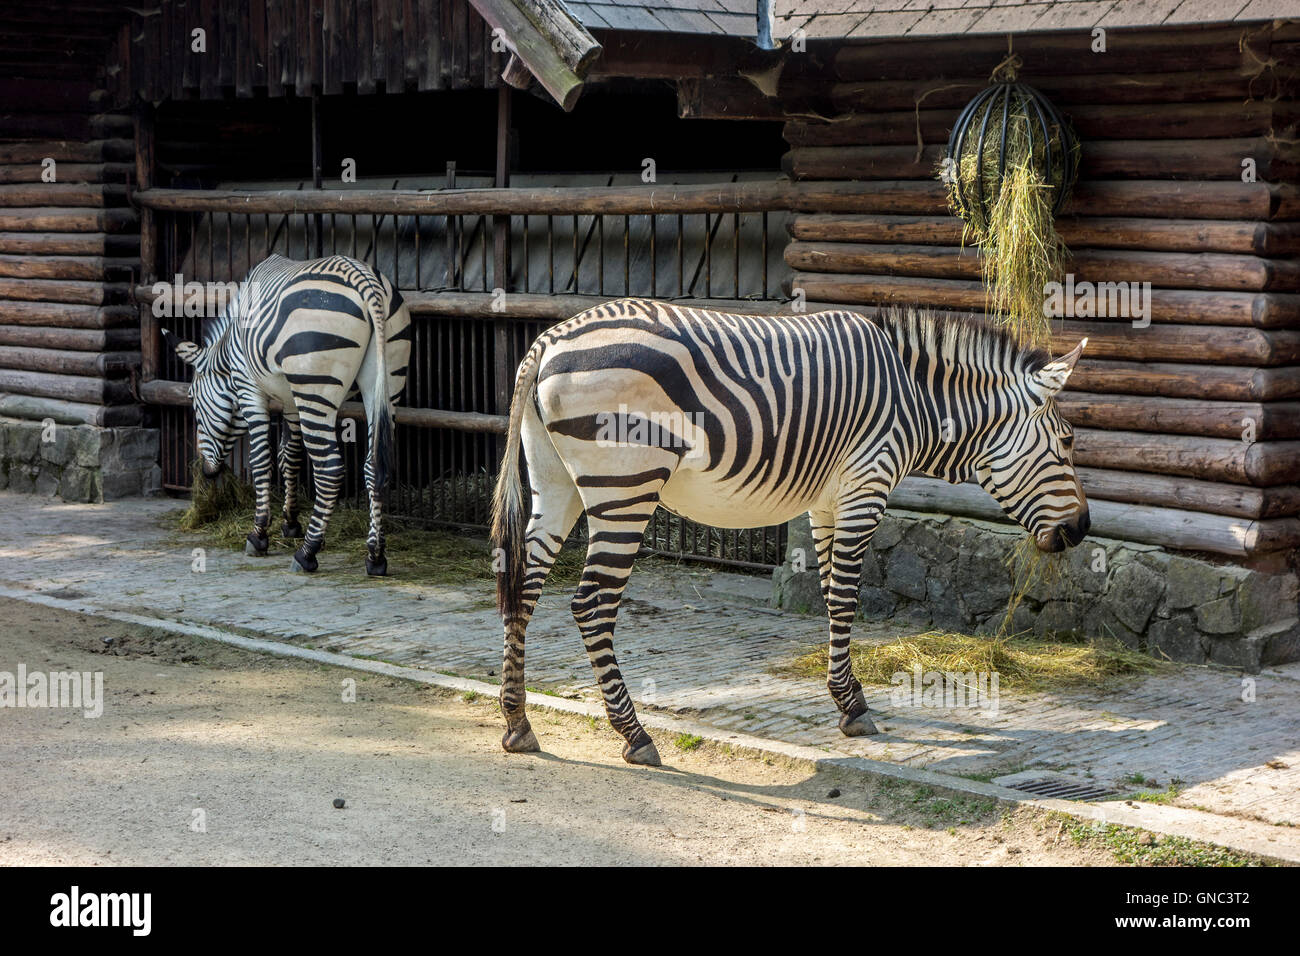 Les zèbres de montagne de Hartmann (Equus zebra hartmannae) au cours de l'alimentation à la fois le Zoo d'Anvers, Belgique Banque D'Images